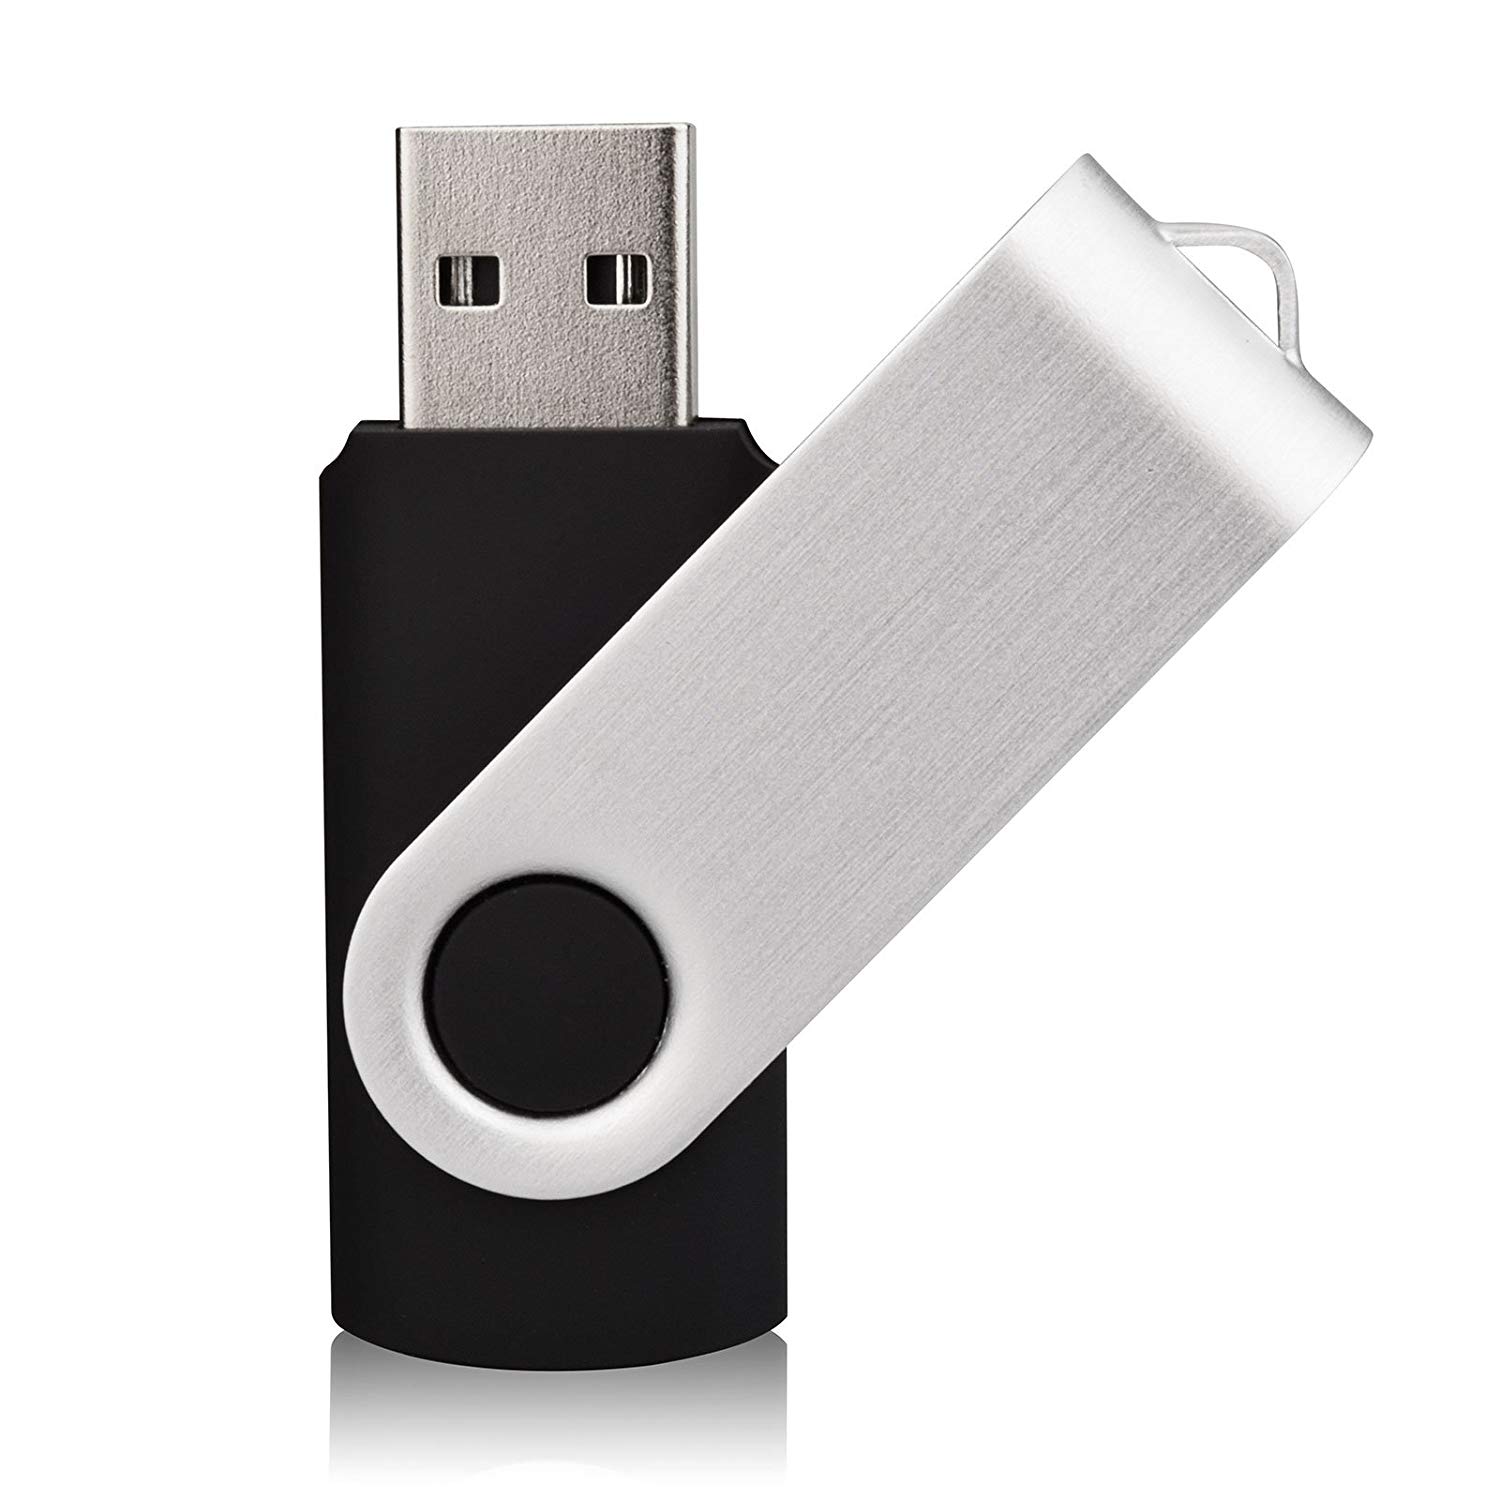 

1PCS 1GB 2GB 4G 8GB 16GB 32GB 64GB 128GB USB Flash Drives USB 2.0 Flash Drives Memory Stick Fold Storage Thumb Drive Pen Swivel Design Black